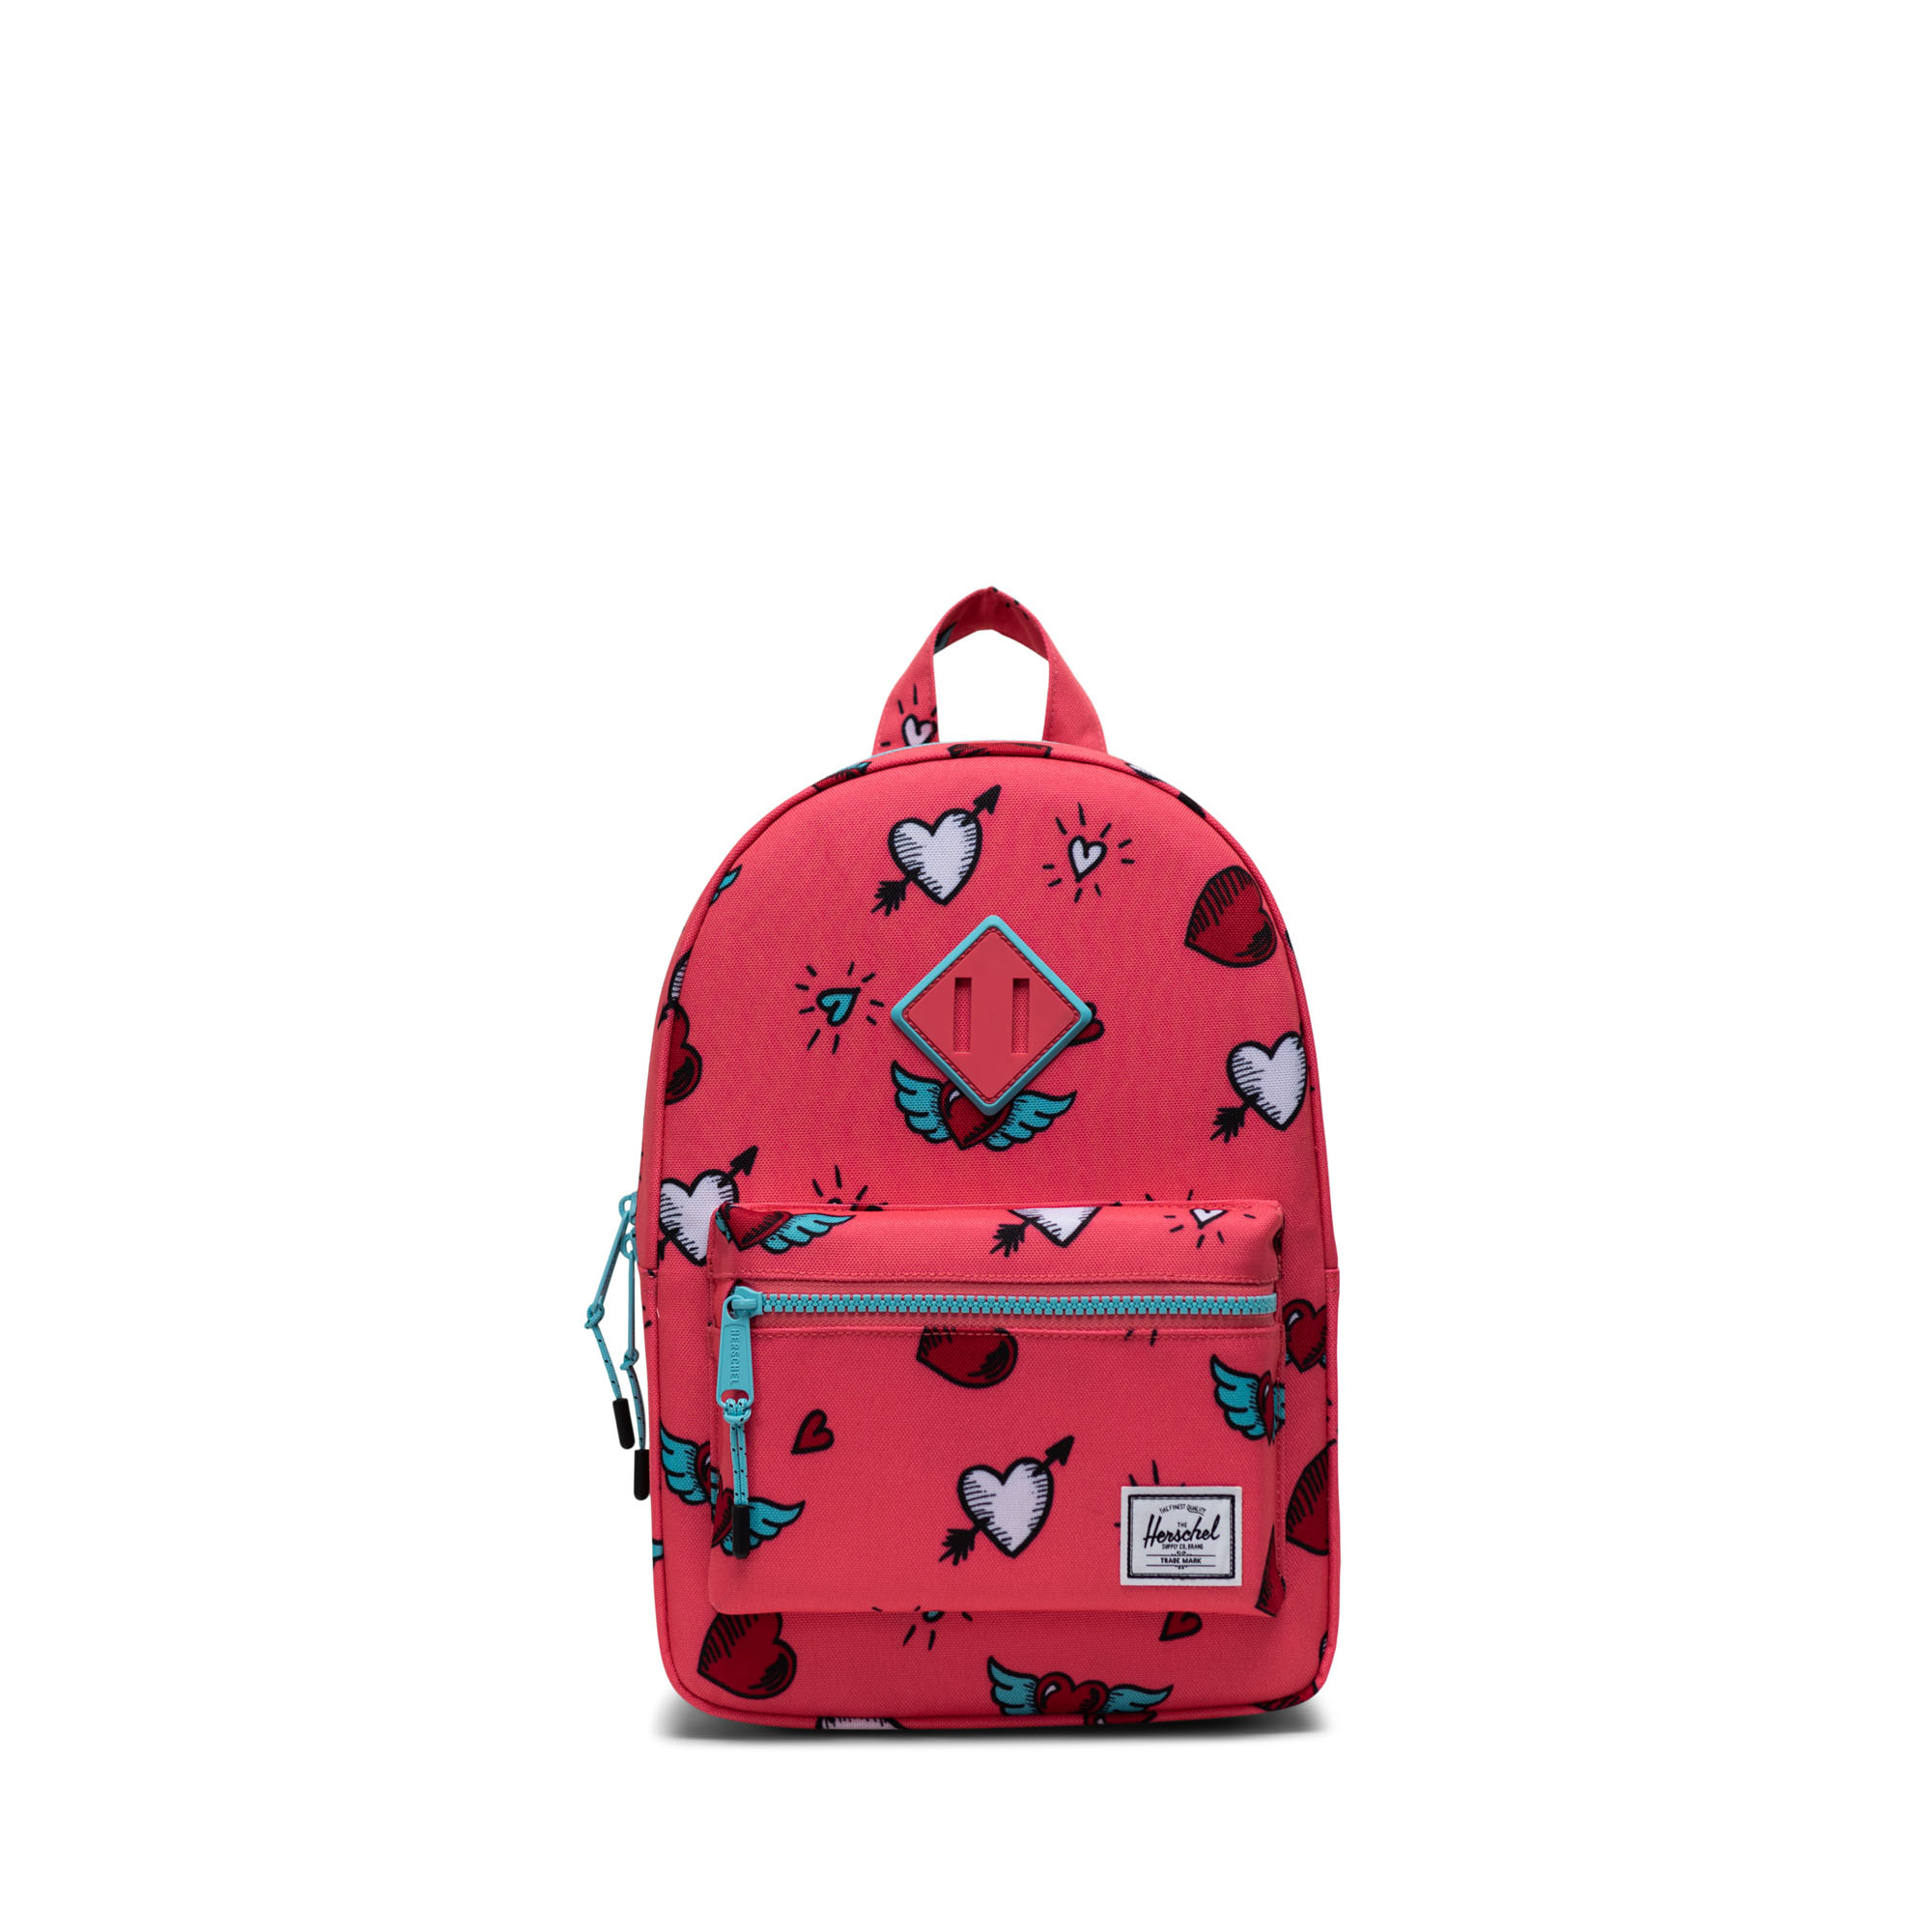 4 Colors Herschel Supply Co Heritage Backpack w/Laptop sleeve 15" school bag 